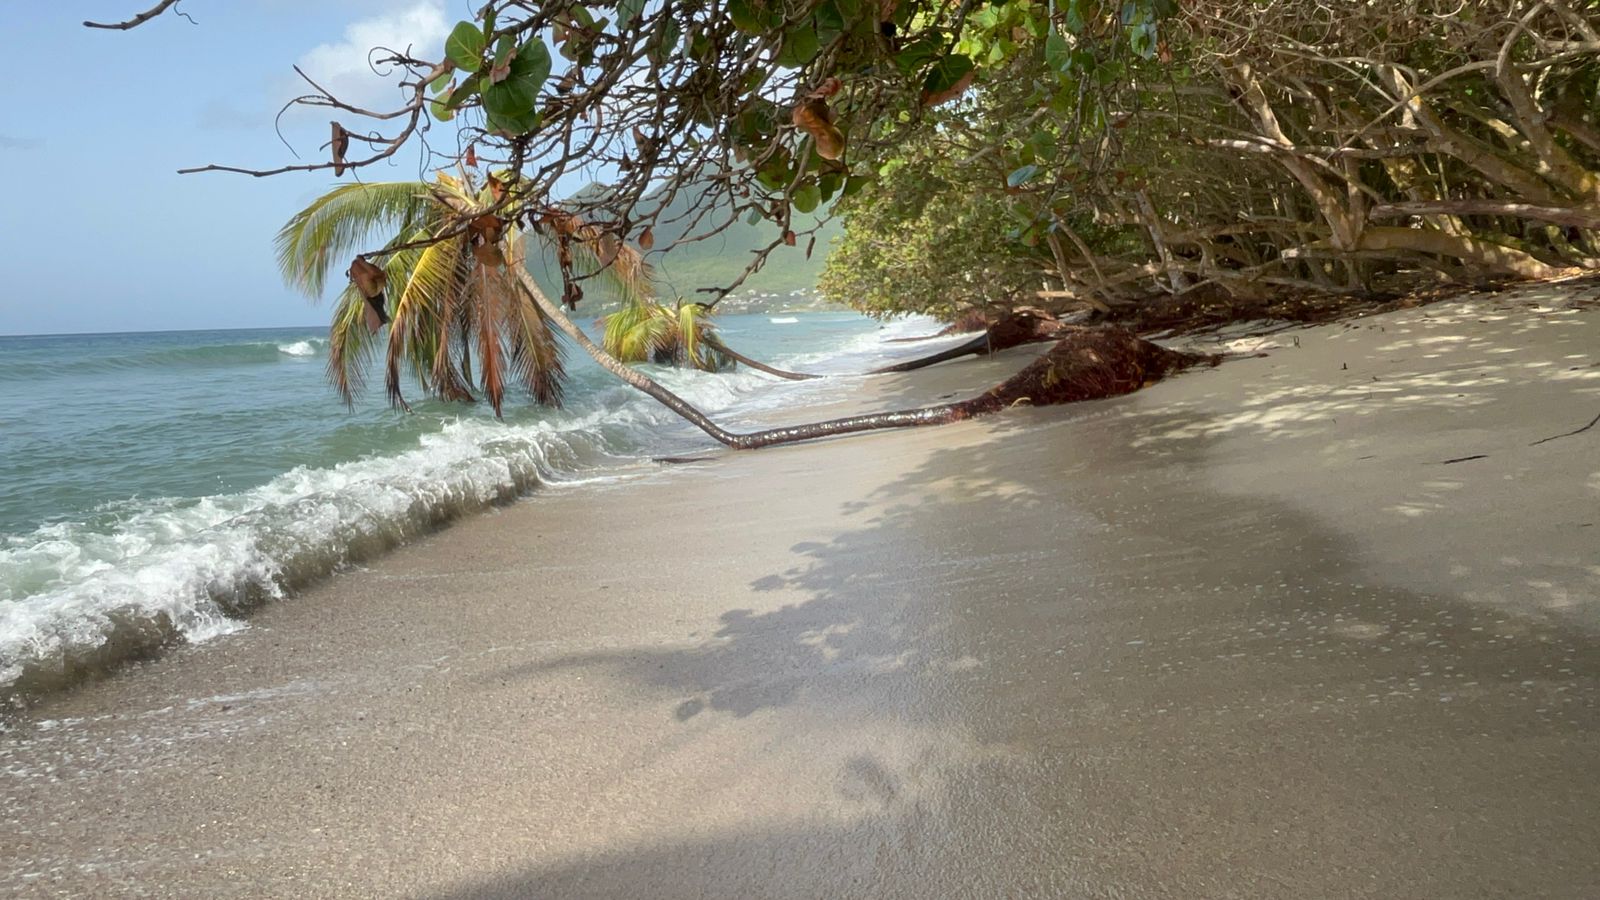     Les plages de Martinique défigurées par le passage de l'ouragan Béryl

